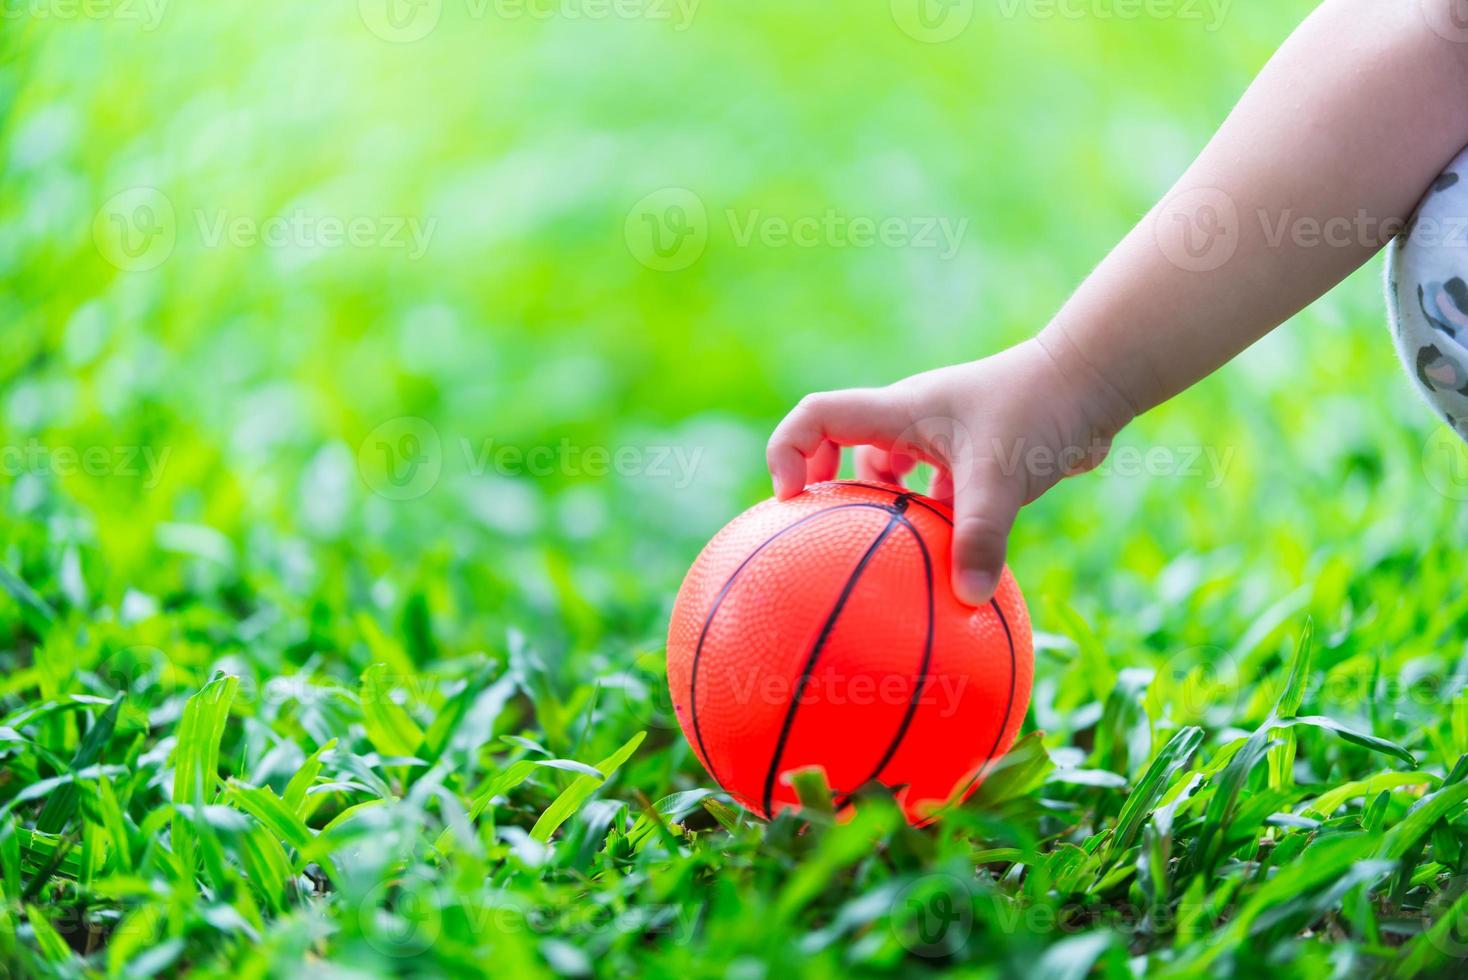 La mano del niño está recogiendo la pelota que ha caído sobre la hierba verde. bola naranja sobre el césped brillante y exuberante. foto